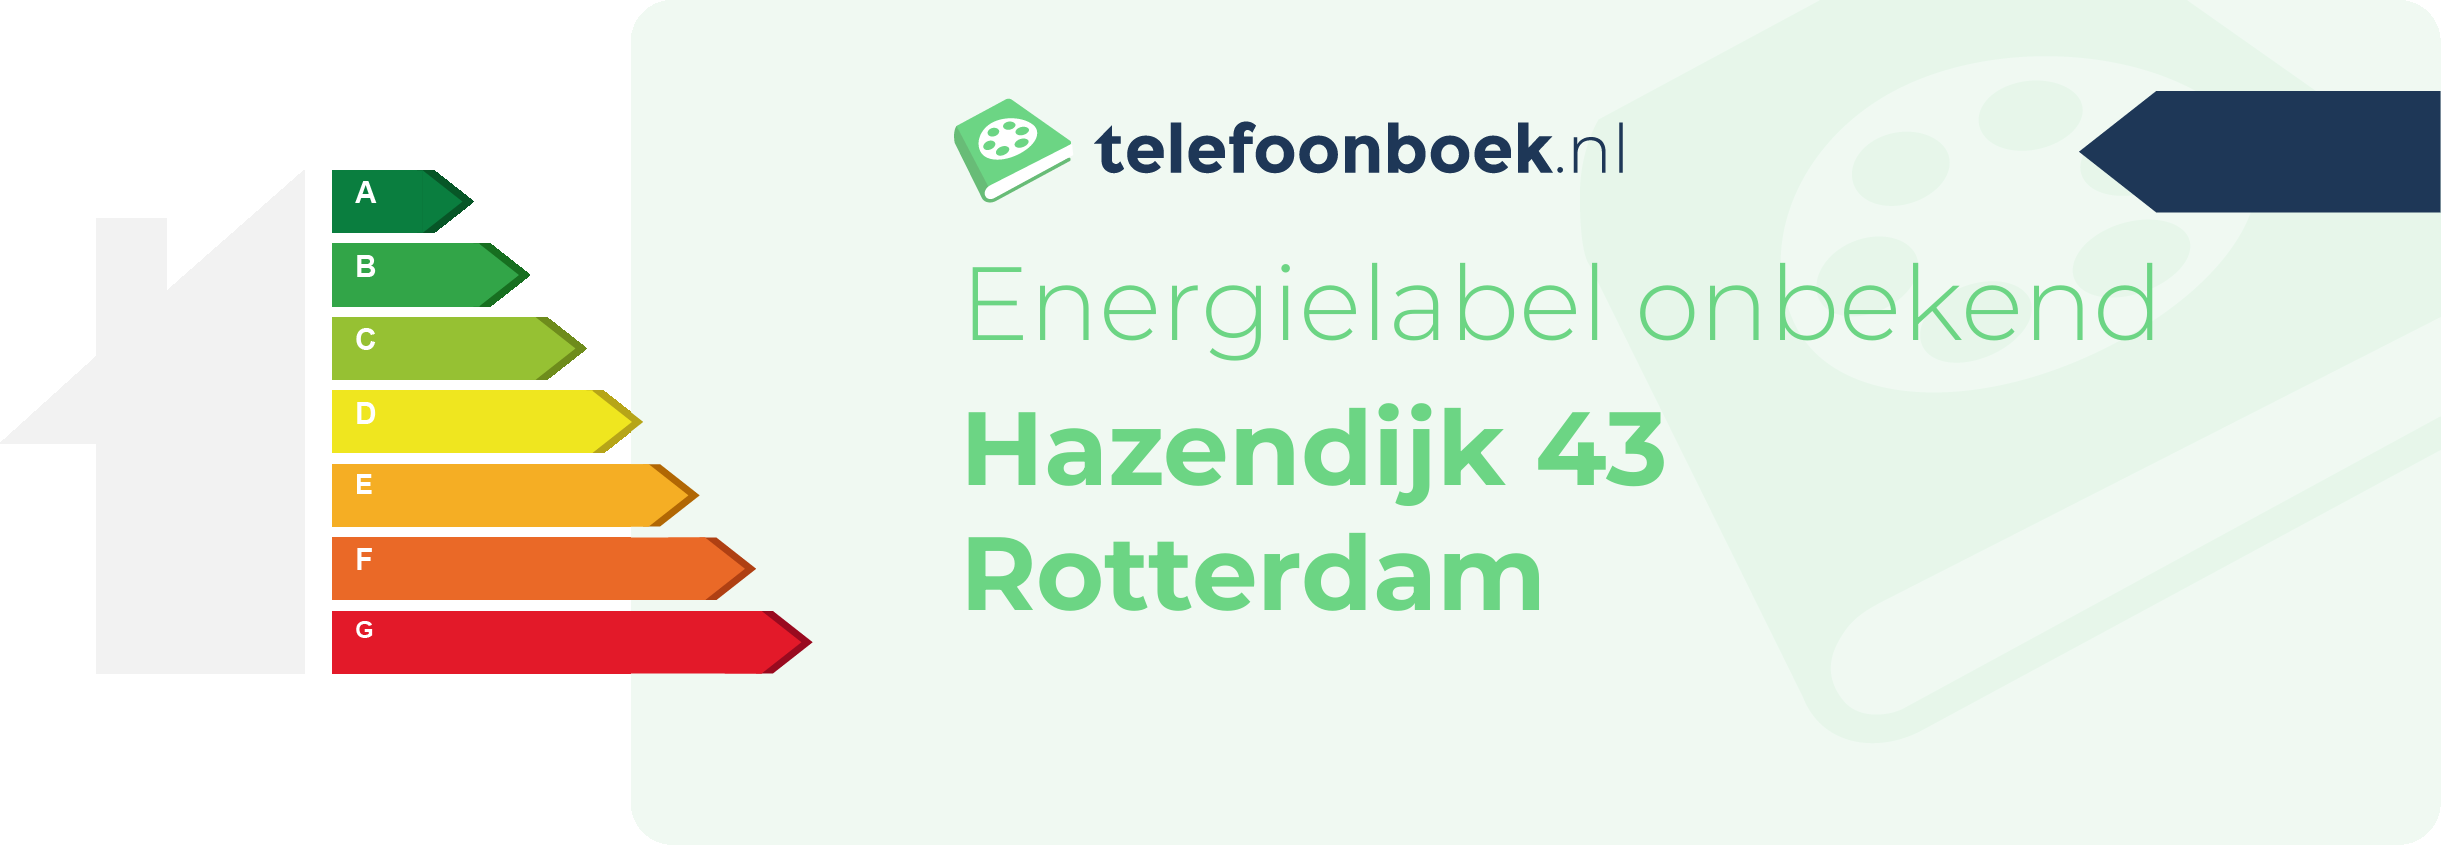 Energielabel Hazendijk 43 Rotterdam